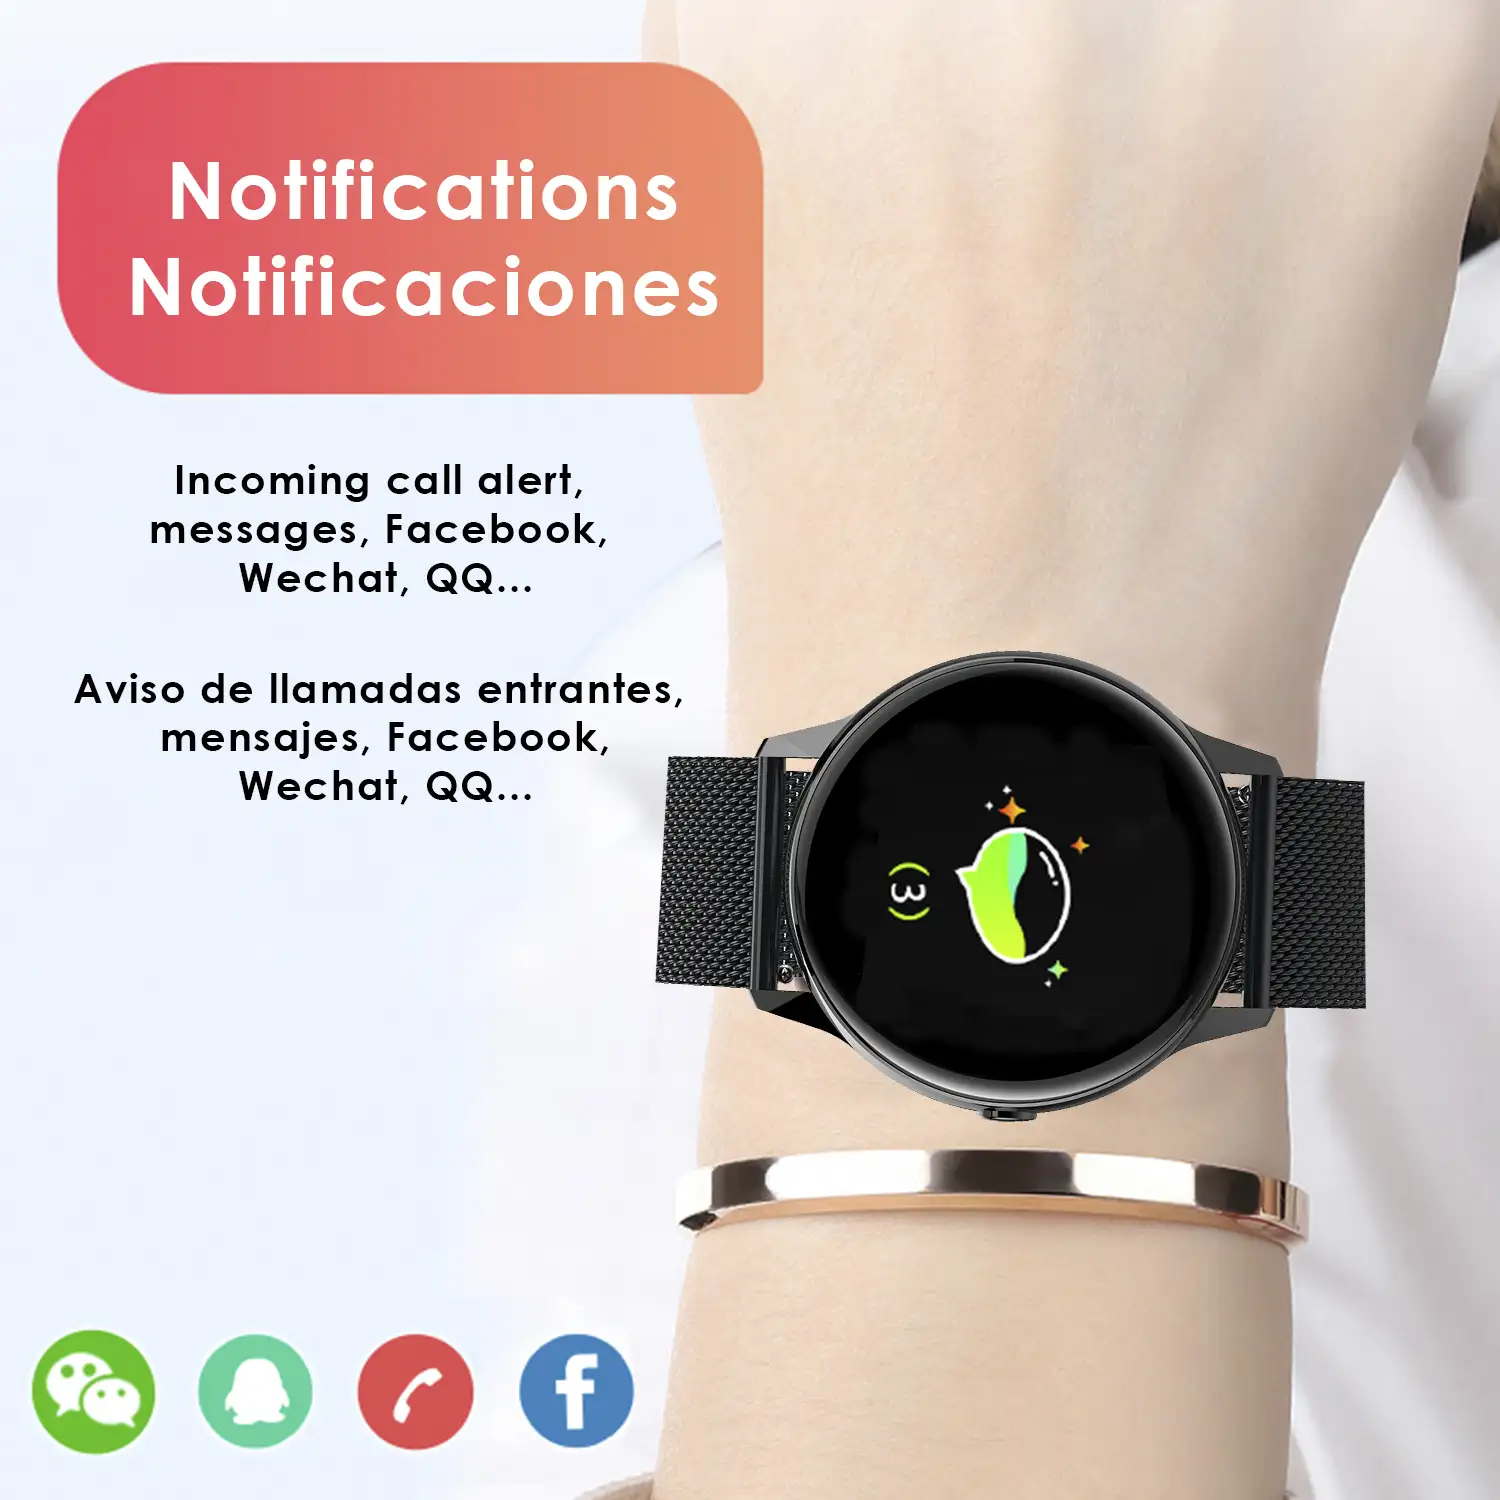 Smartwatch DT88 pantalla circular, con monitor cardiaco, altitud, presión, radiación UV y modo multideporte